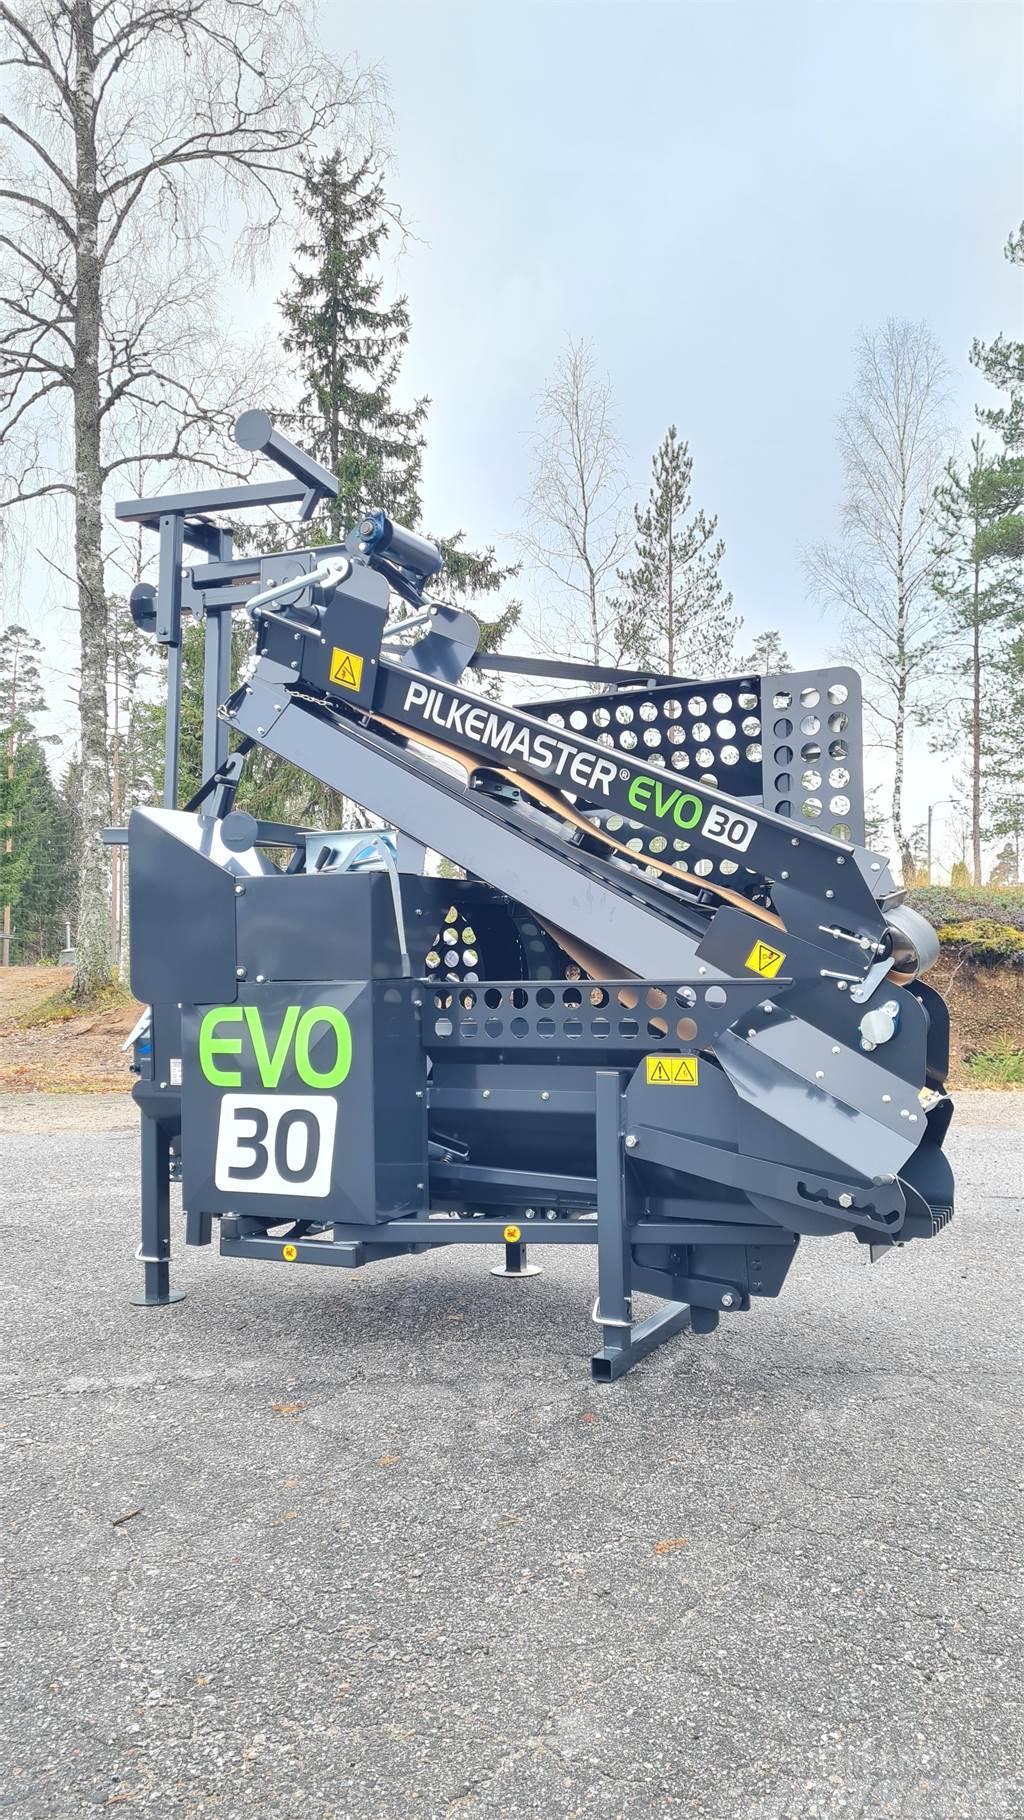 Pilkemaster Vedmaskin EVO 30 TR Procesadoras y cortadoras de leña